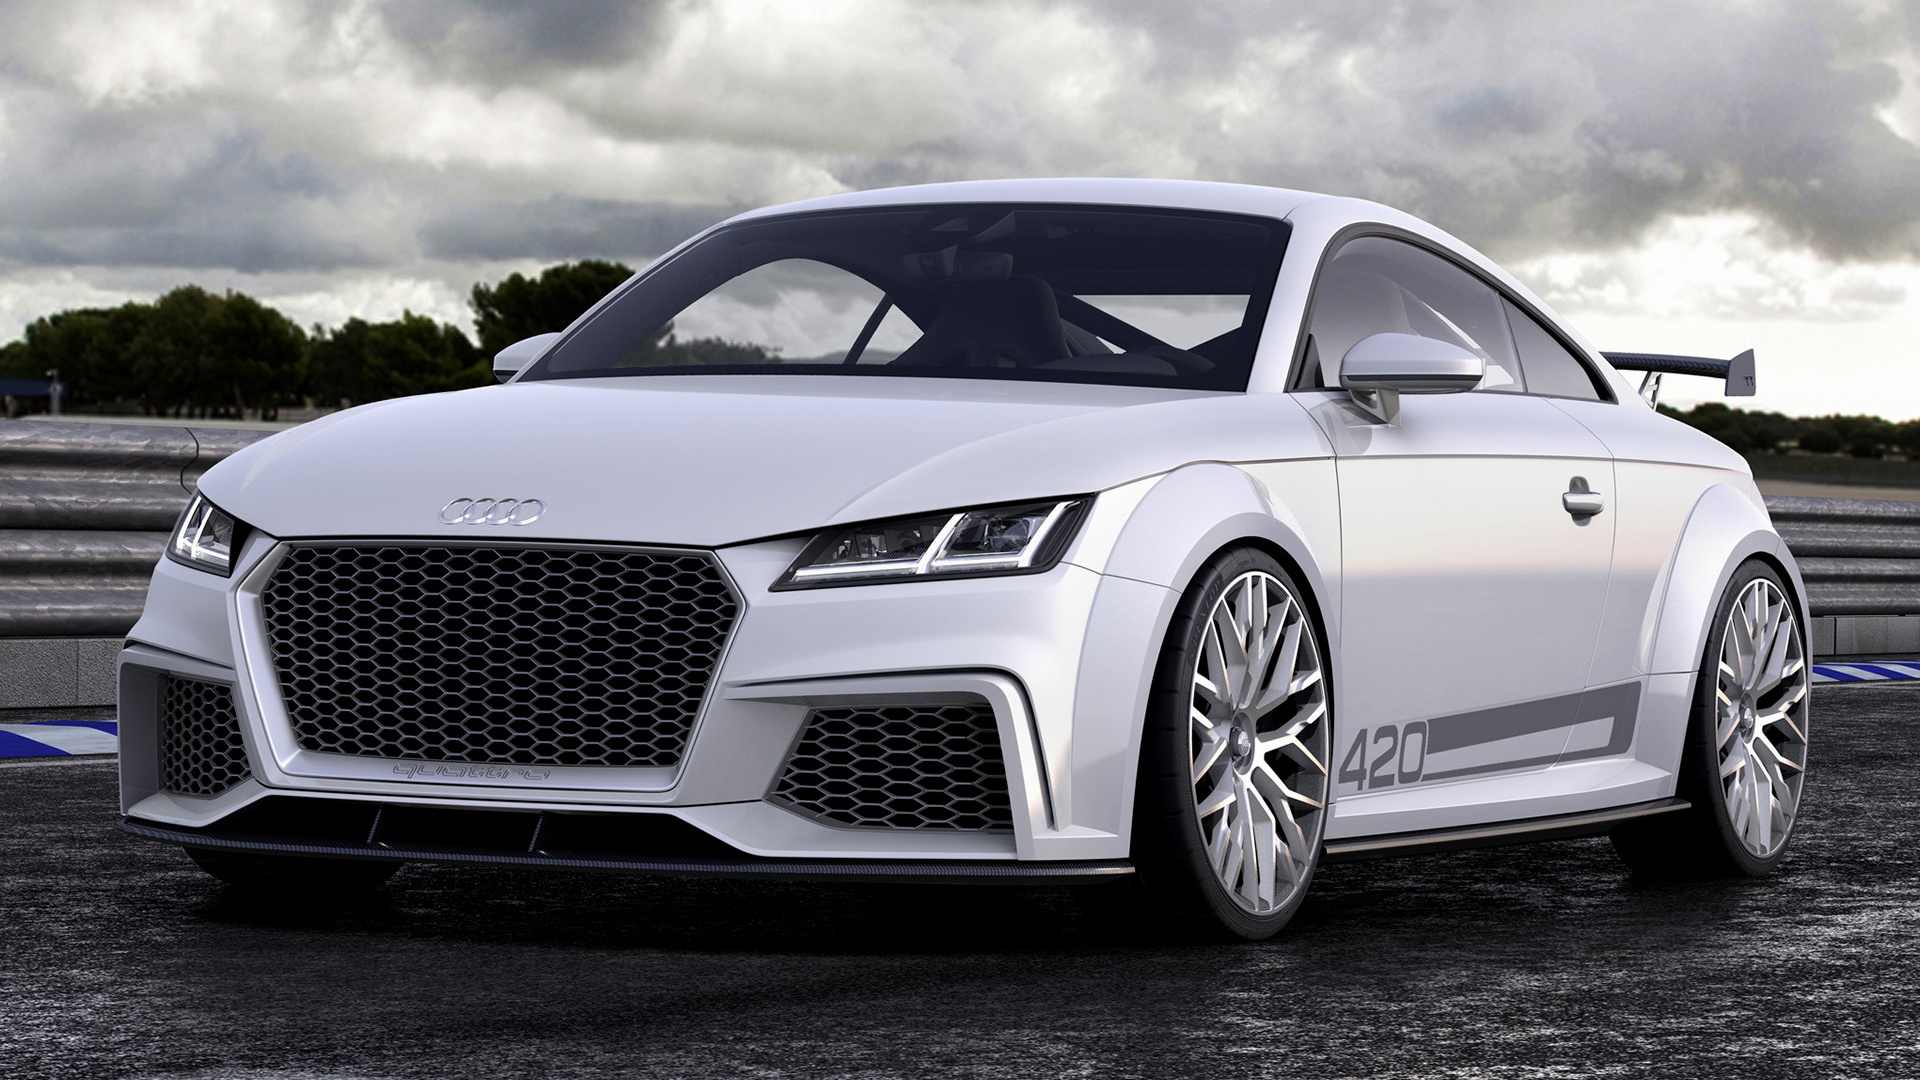 The Future Of Performance: The 2014 Audi TT Quattro Sport Concept